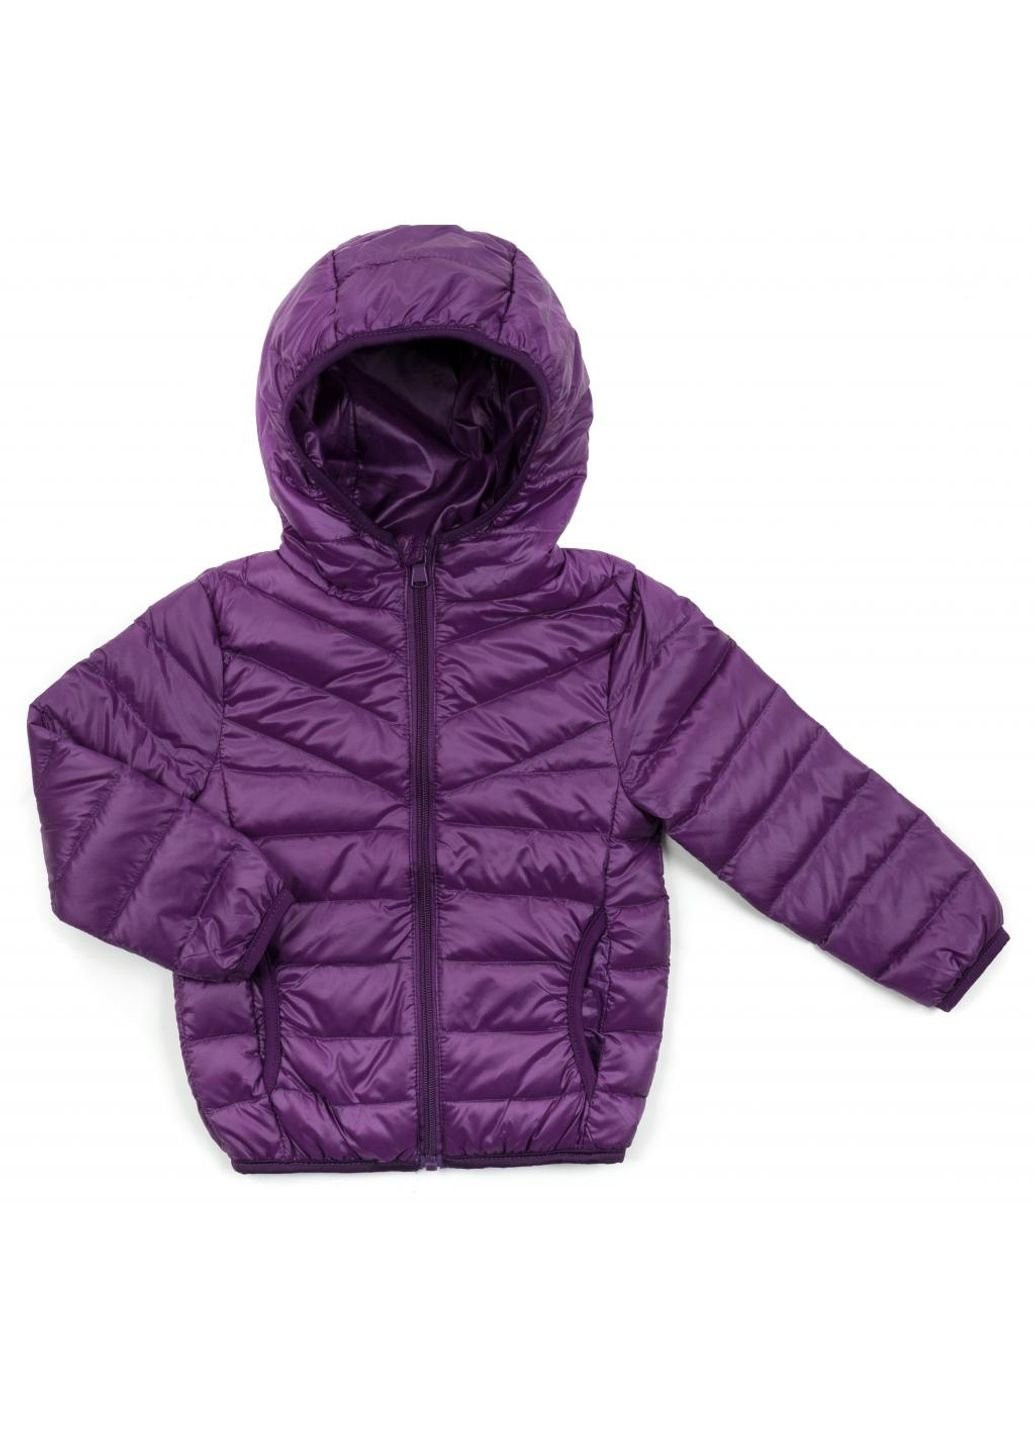 Фиолетовая демисезонная куртка kurt пуховая (ht-580t-104-violet) Power